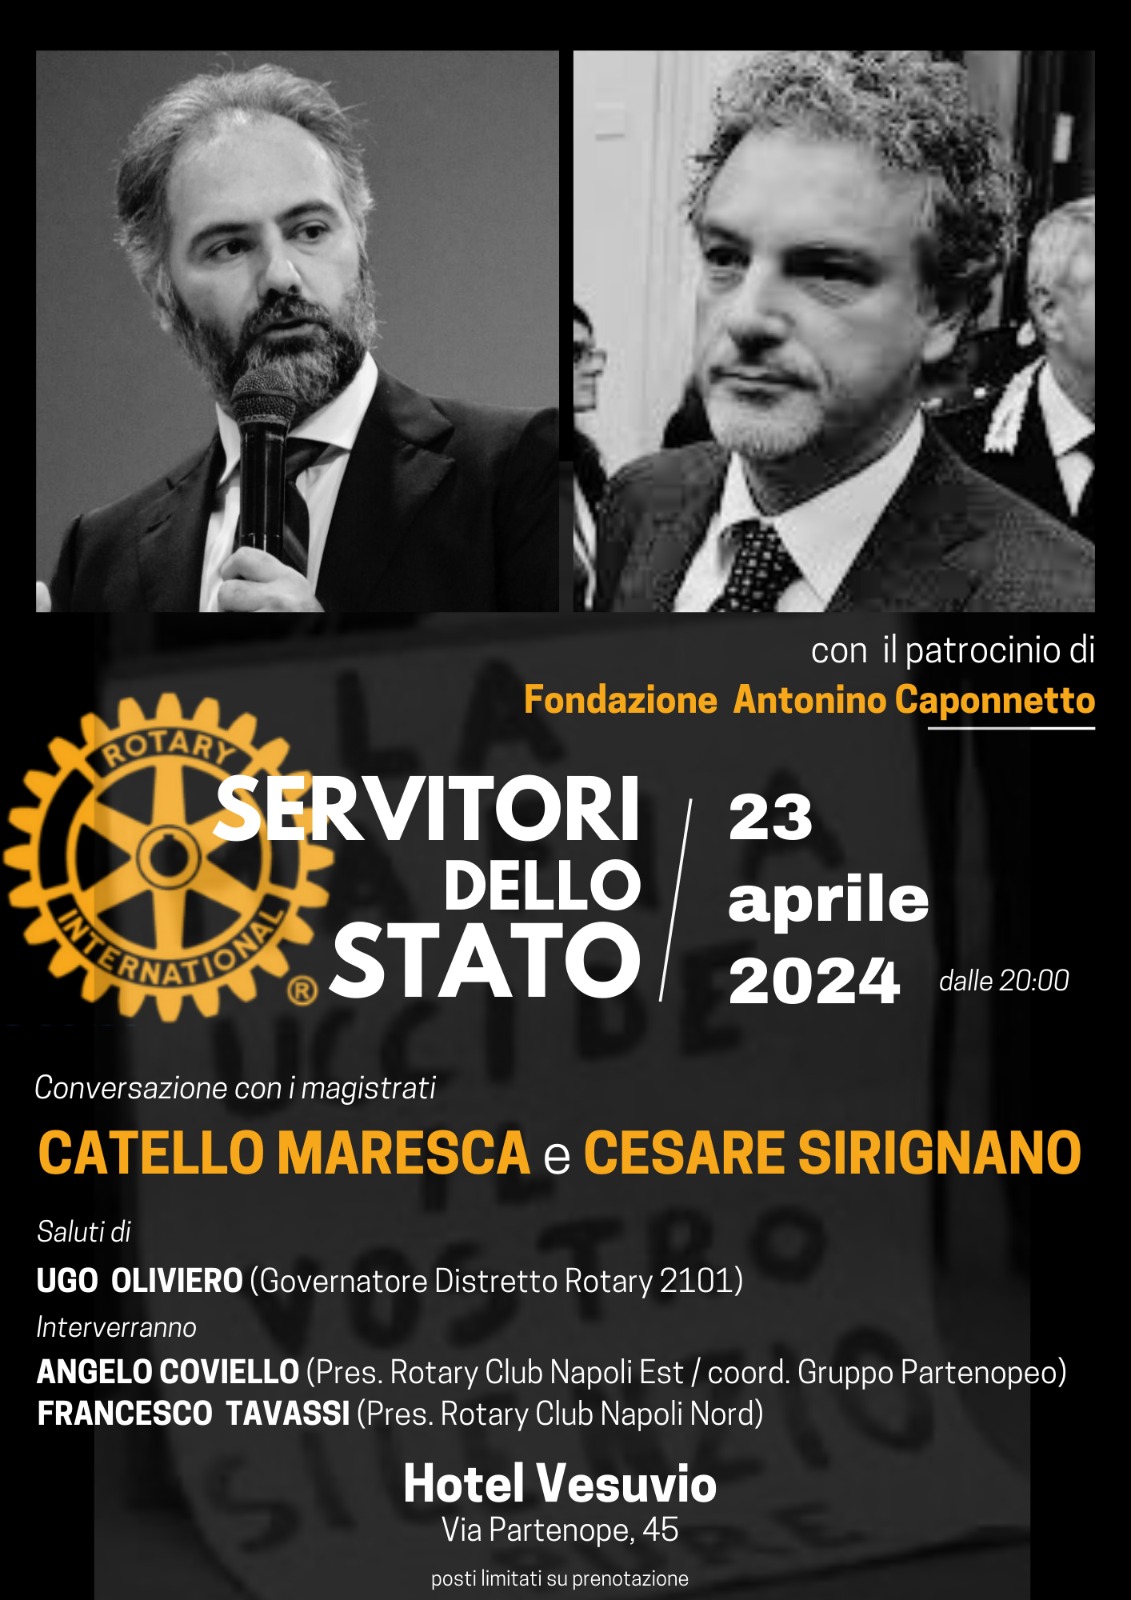 Napoli: “Servitori di Stato”, Rotary Napoli Est, serata su impegno e sacrificio dei magistrati